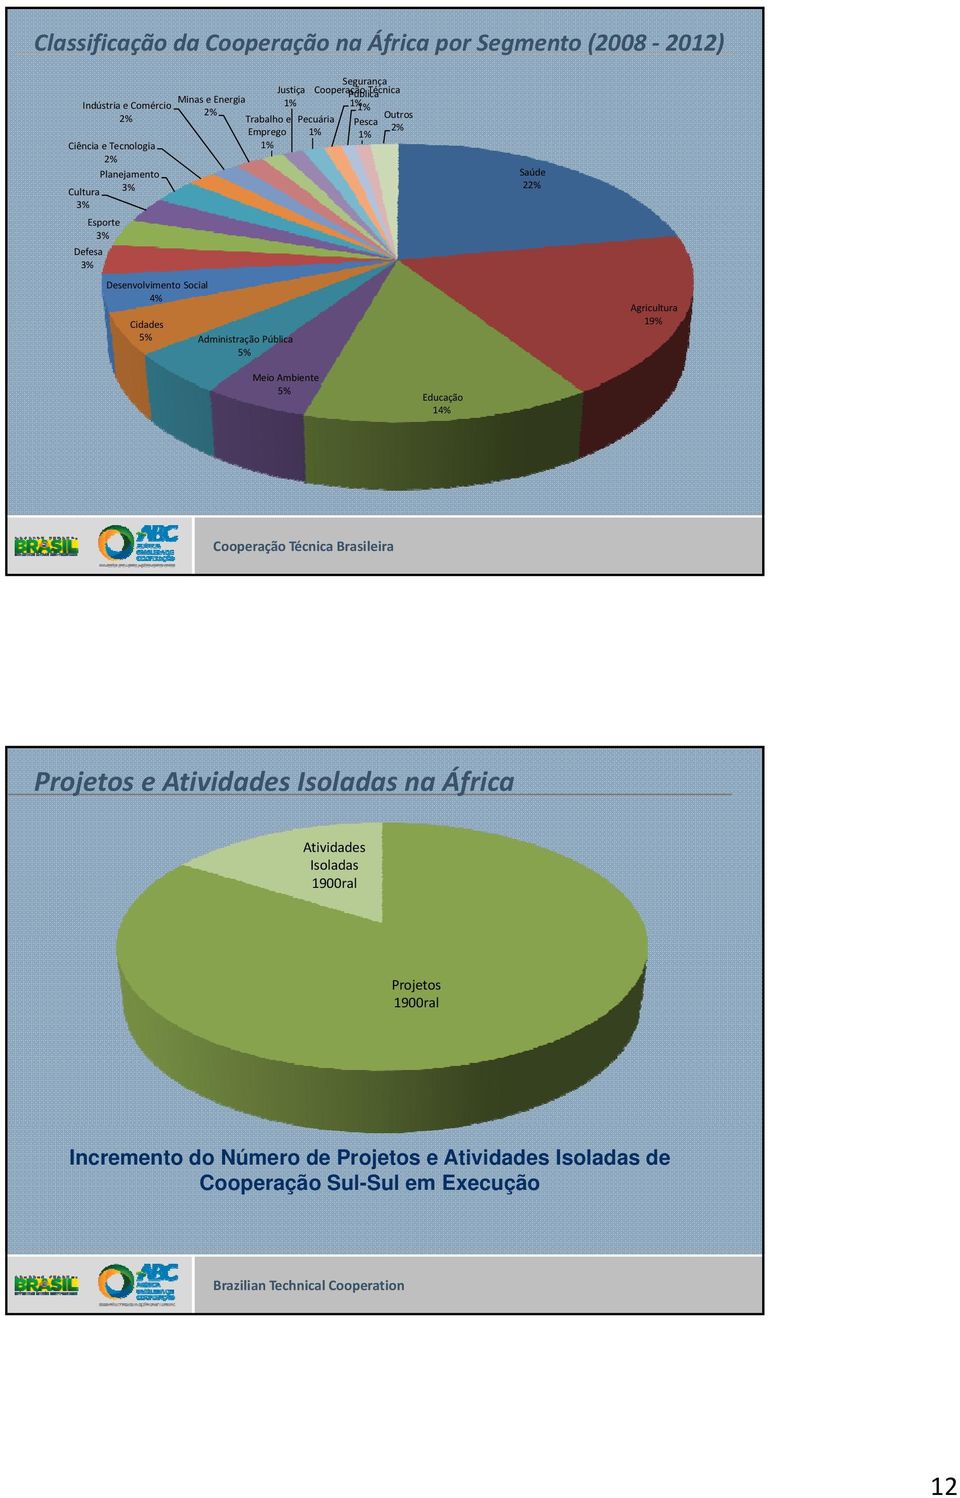 Emprego 1% 2% 1% 1% Administração Pública 5% Saúde 22% Agricultura 19% Meio Ambiente 5% Educação 14% Projetos e Atividades Isoladas na África Atividades